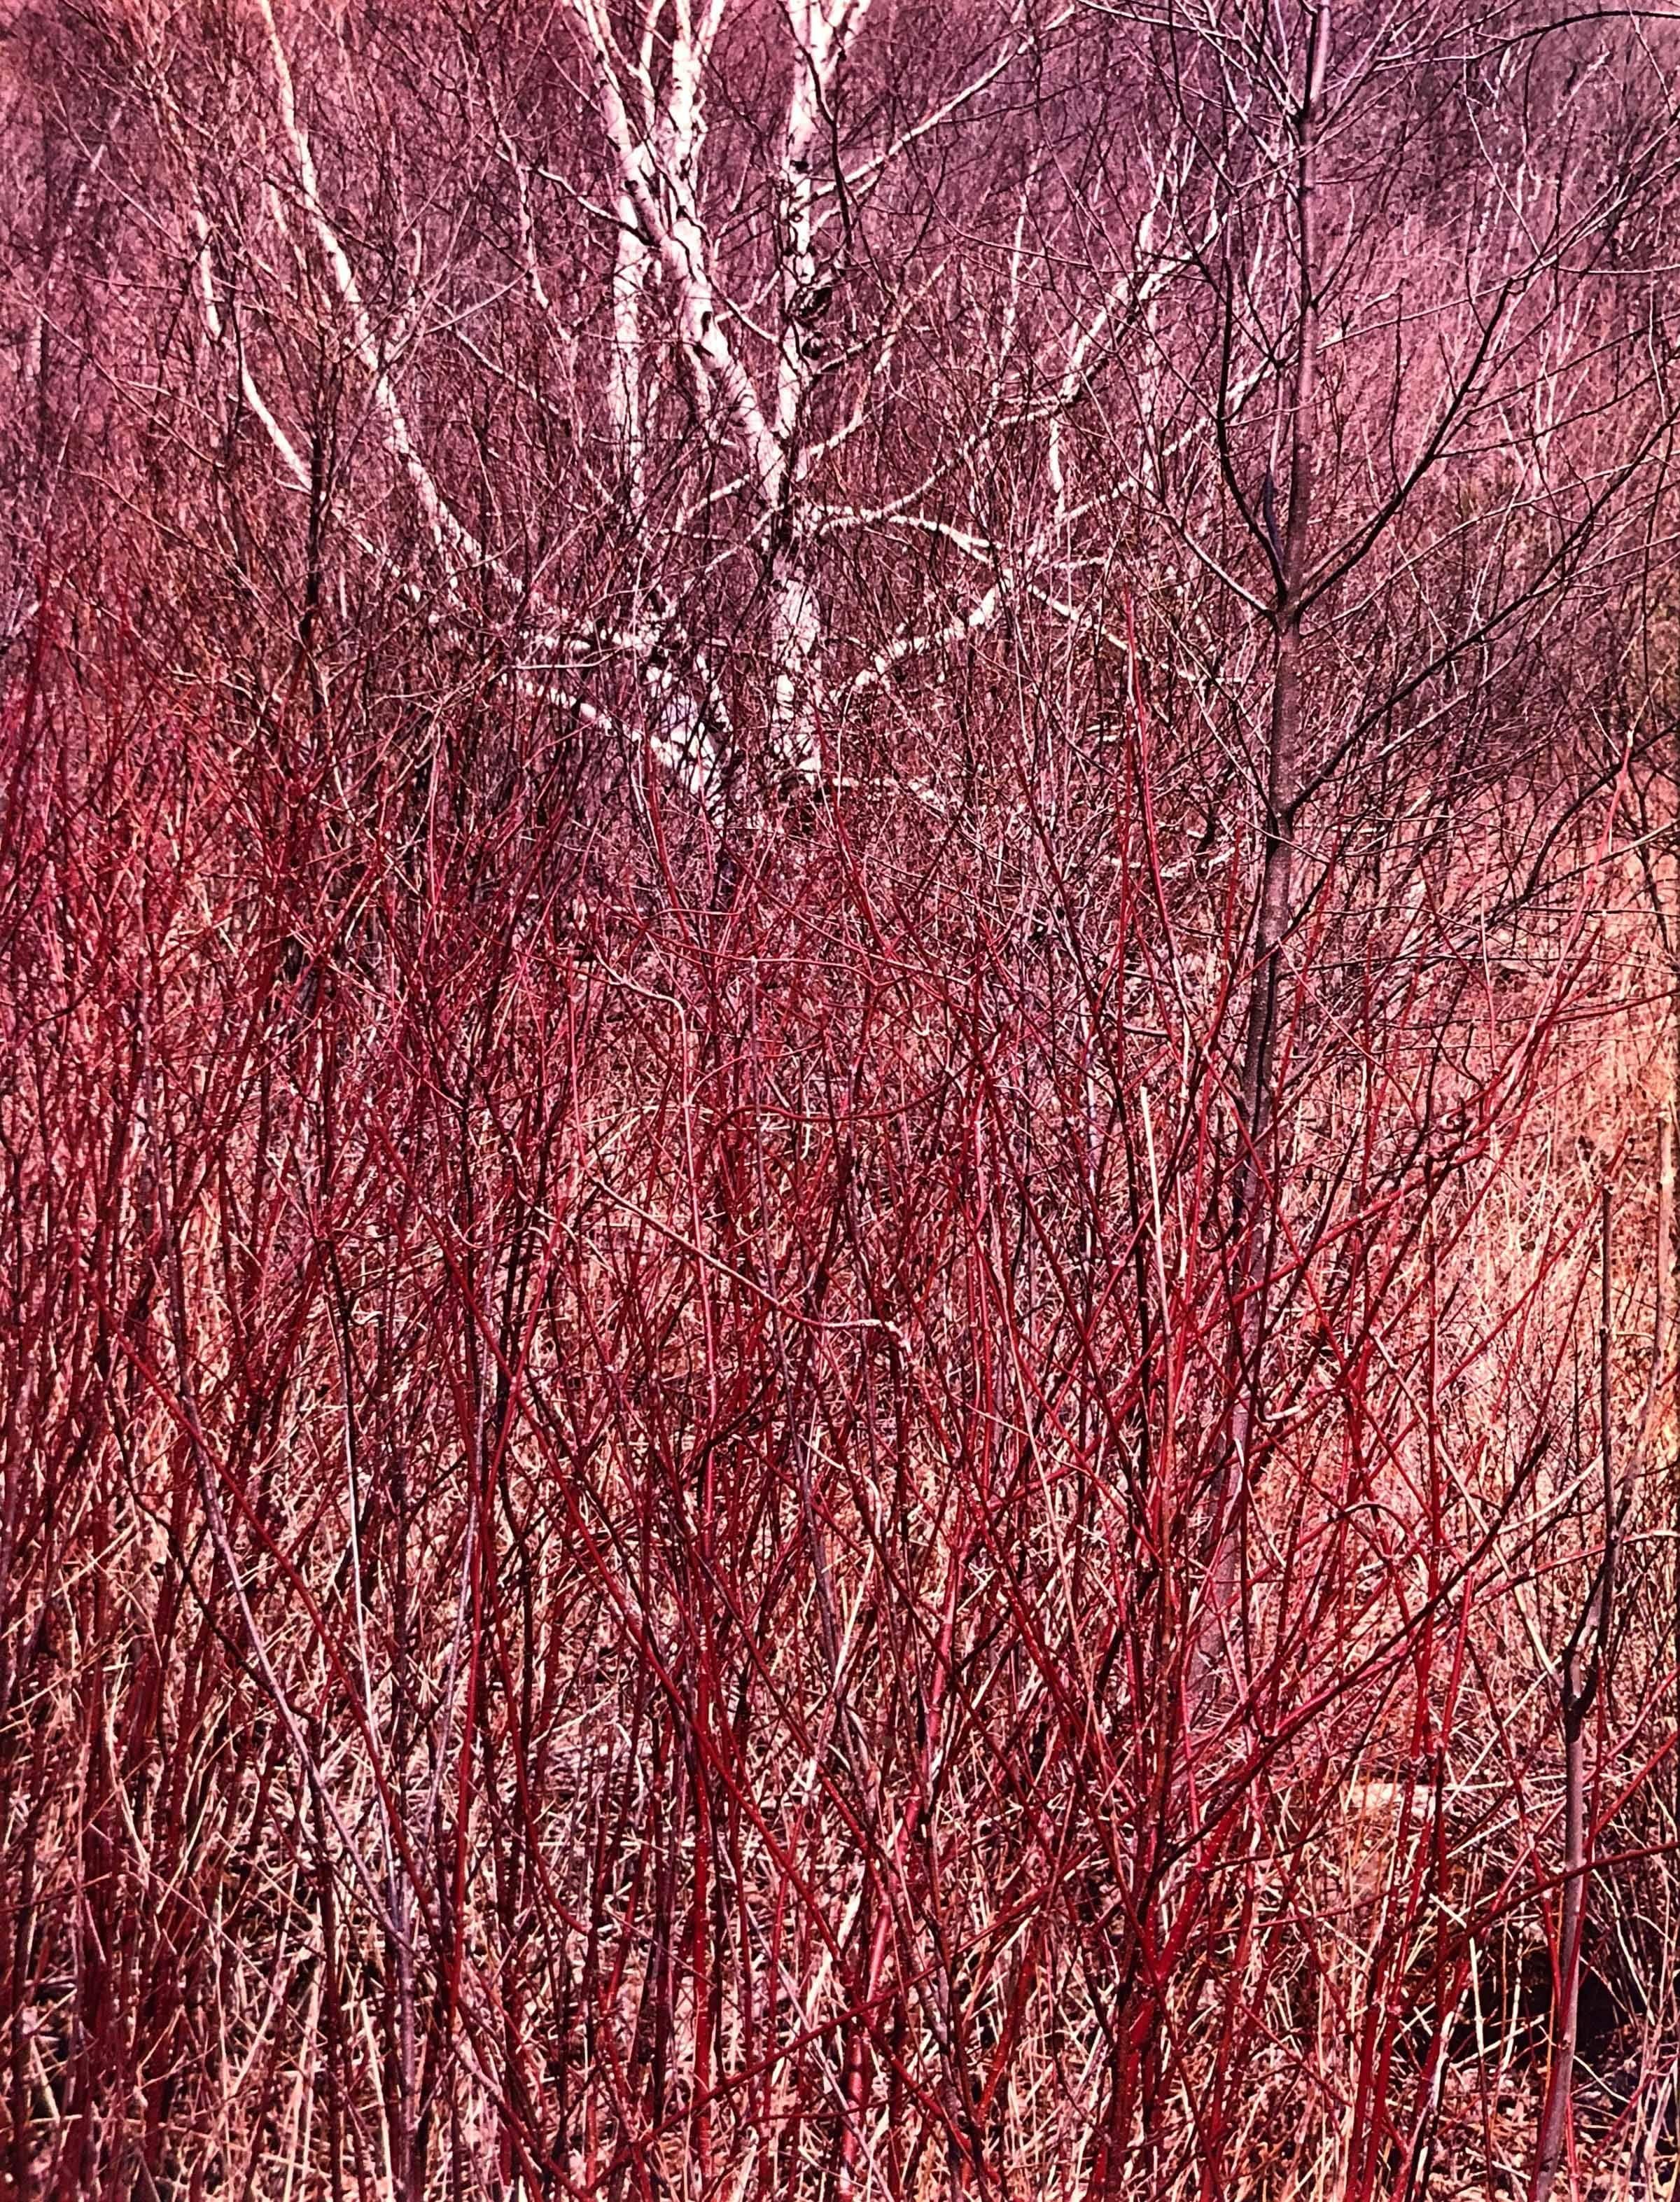 Eliot Porter Landscape Photograph - Red Osier, near Great Barrington, Massachusetts, April 18, 1957 